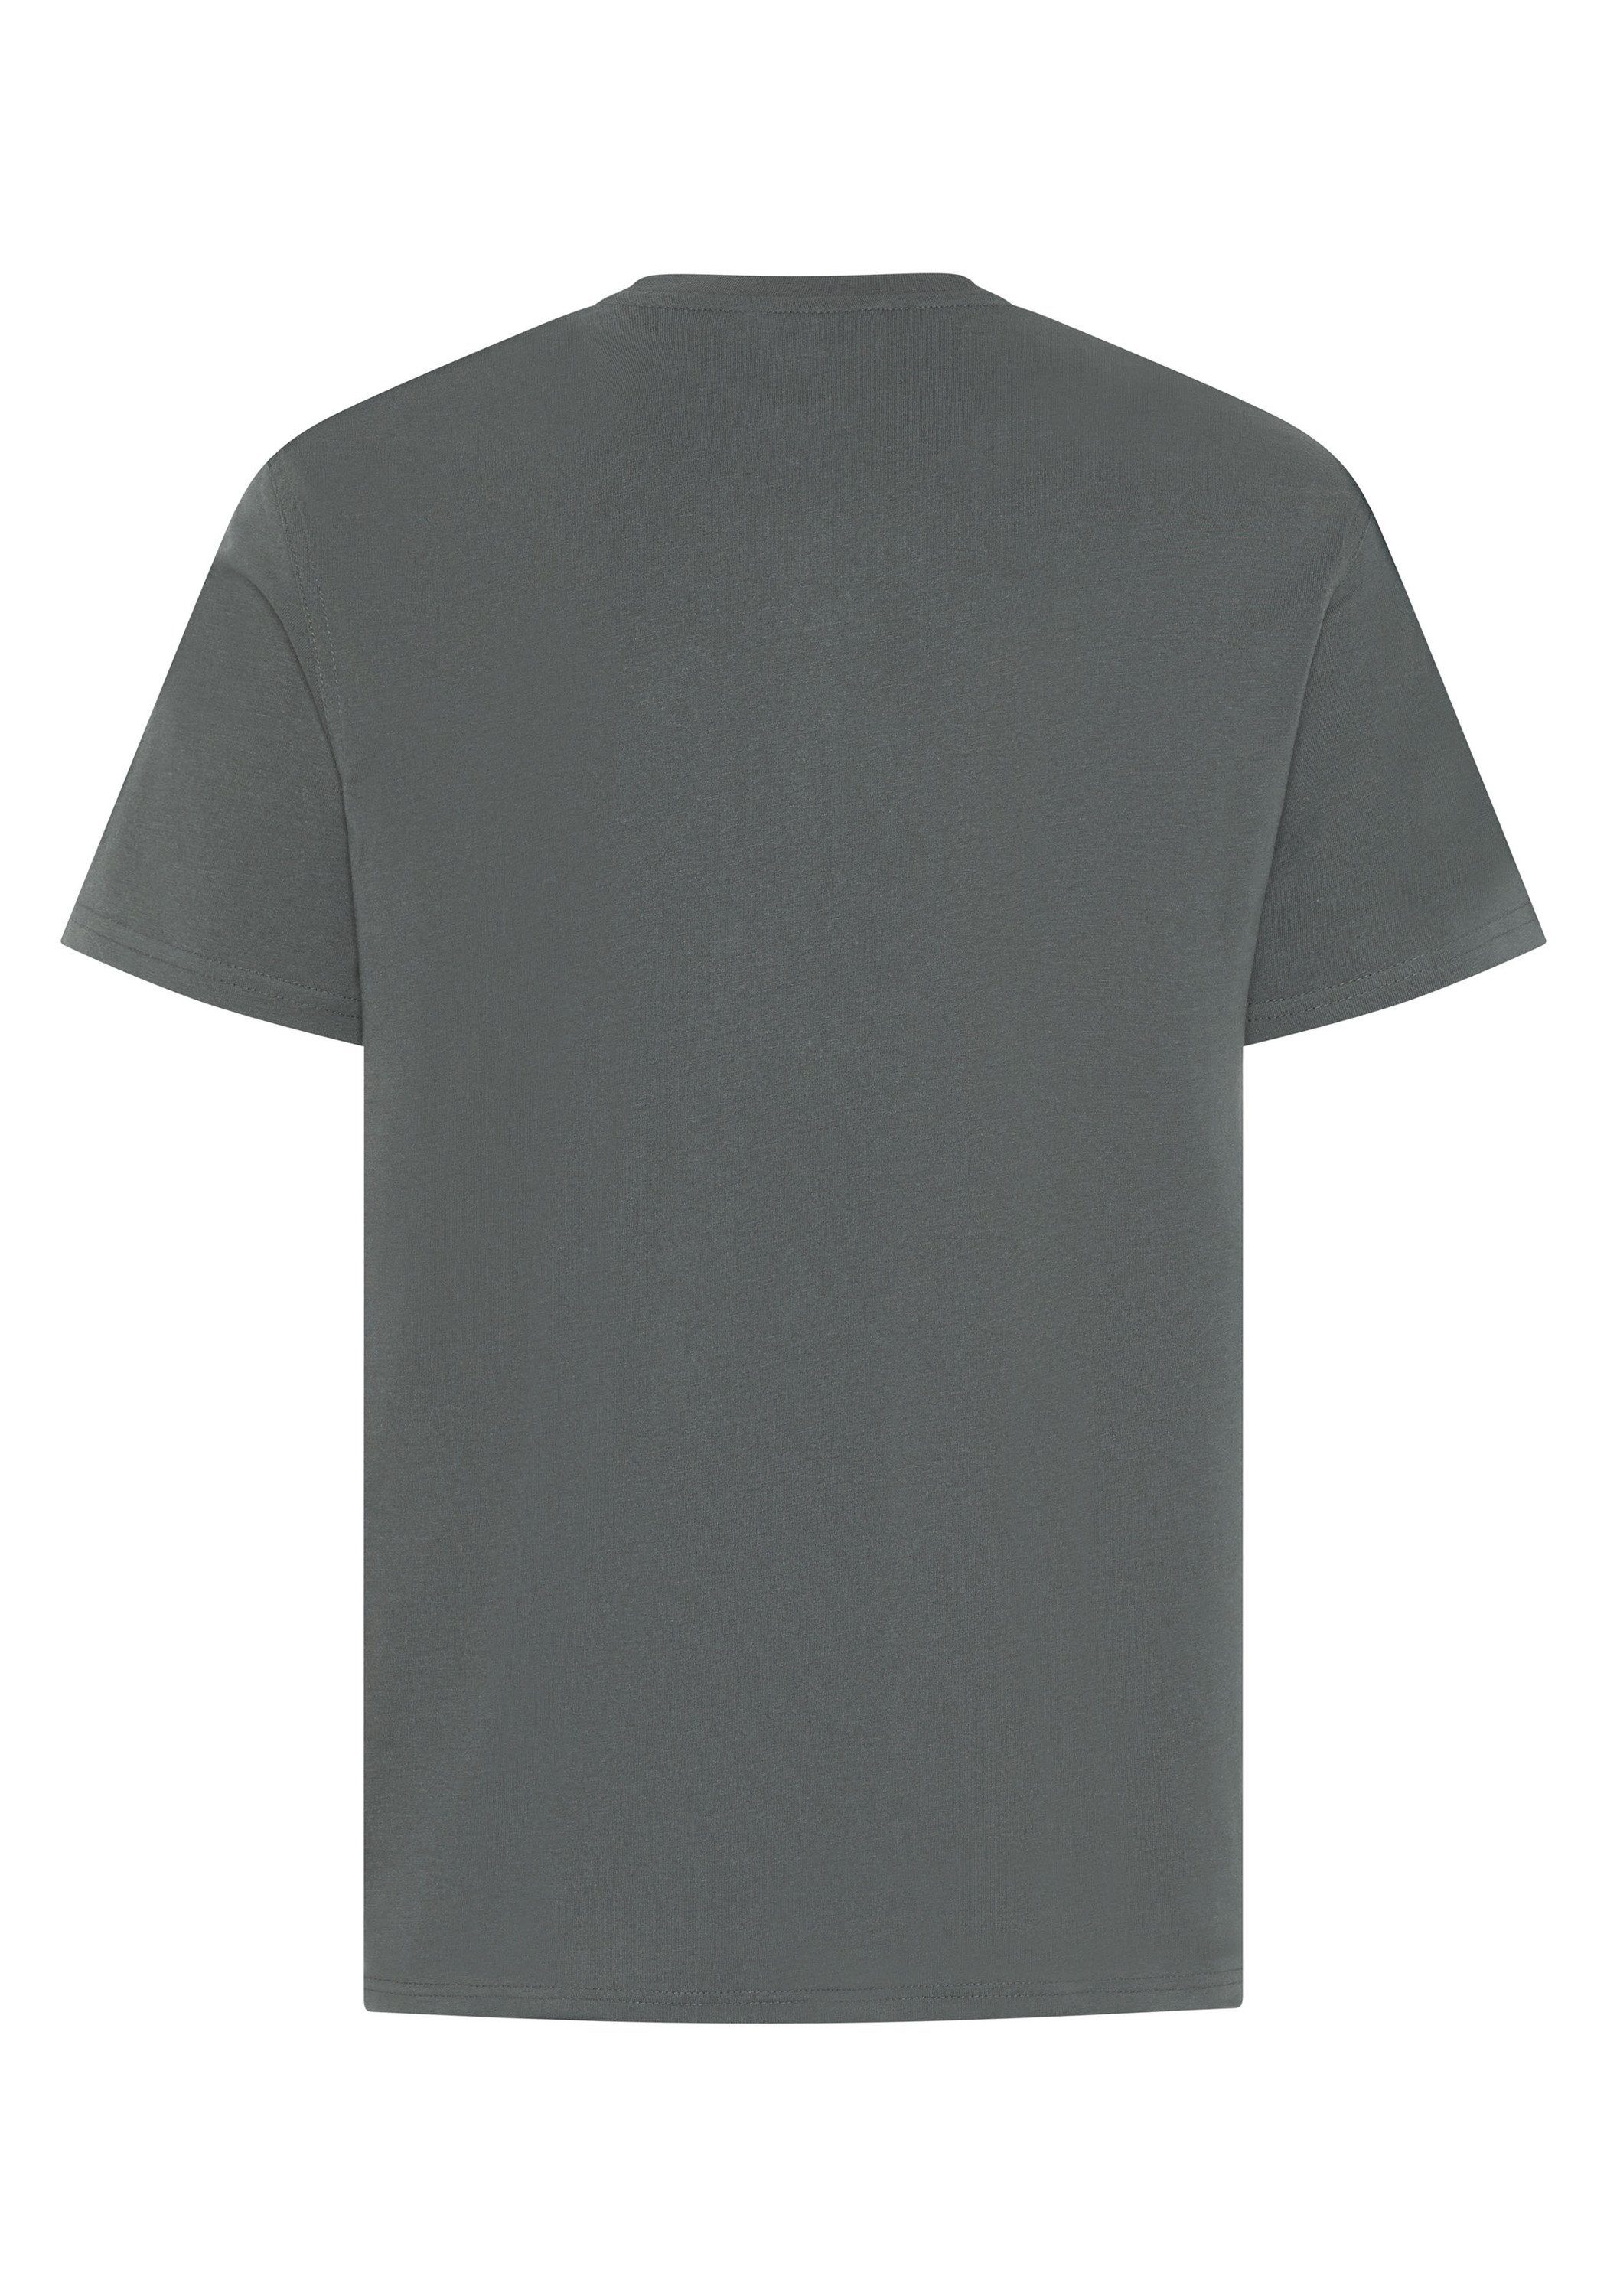 Expand einlaufvorbehandelt T-Shirt anthrazit